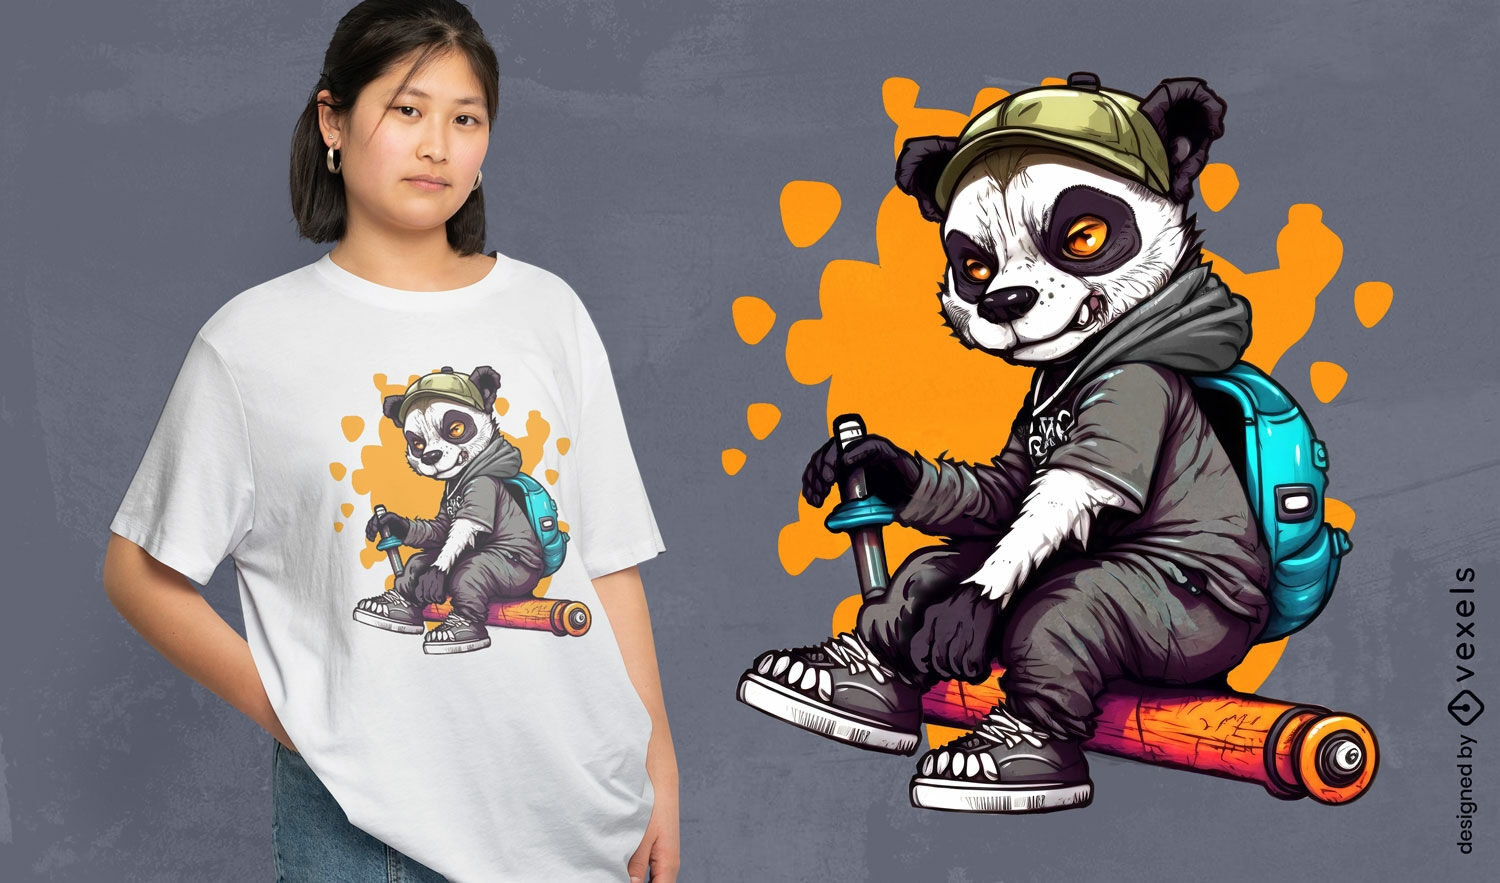 Panda-B?ren-Rebellen-Cartoon-T-Shirt-Design